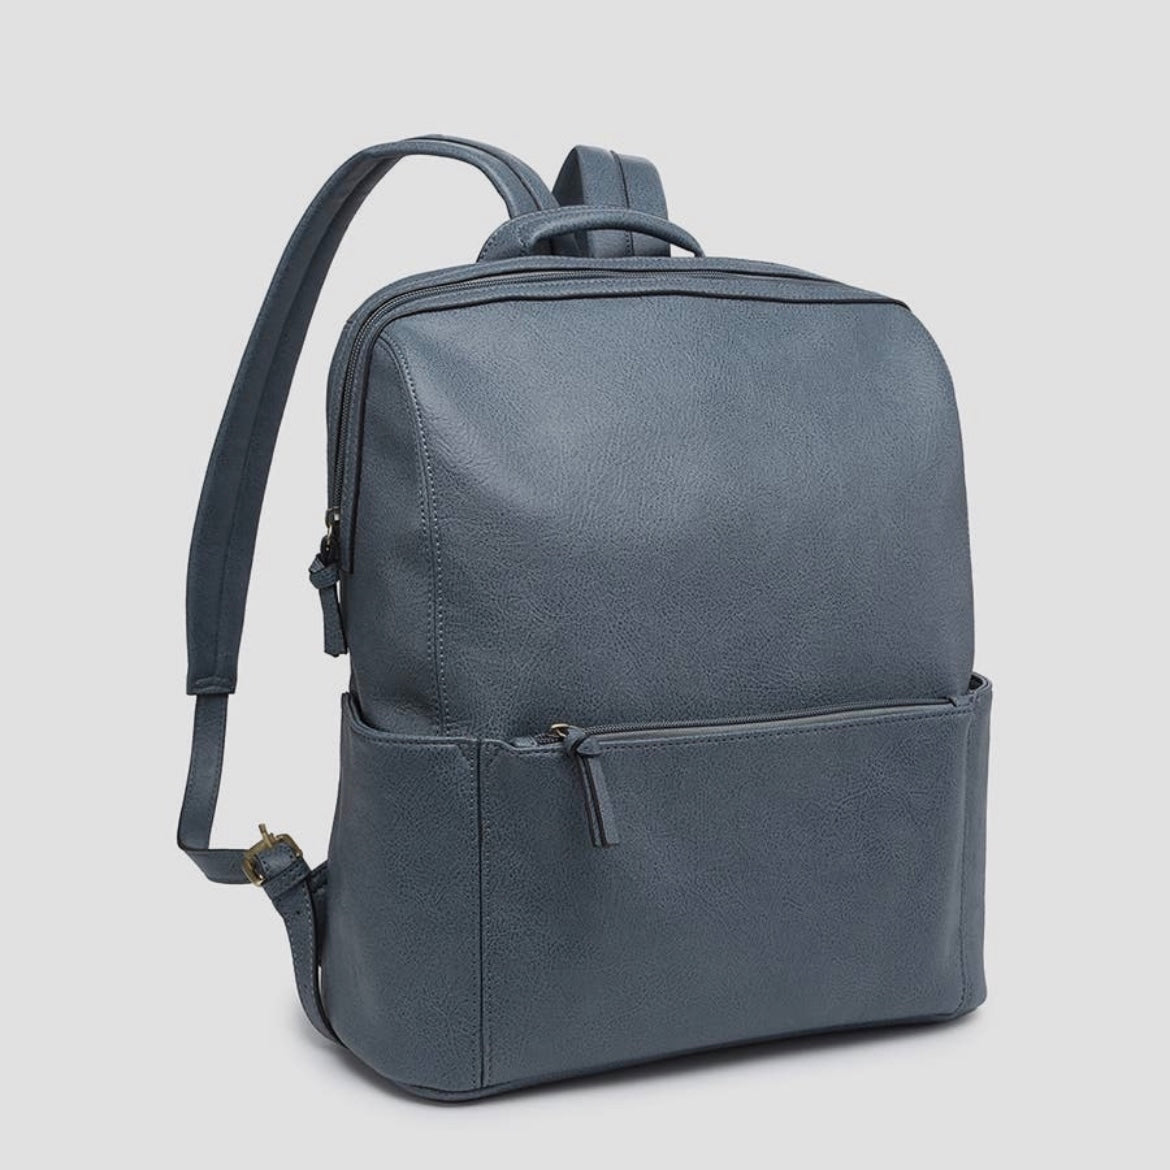 Jen & Co James Vegan Leather Backpack, Denim Blue